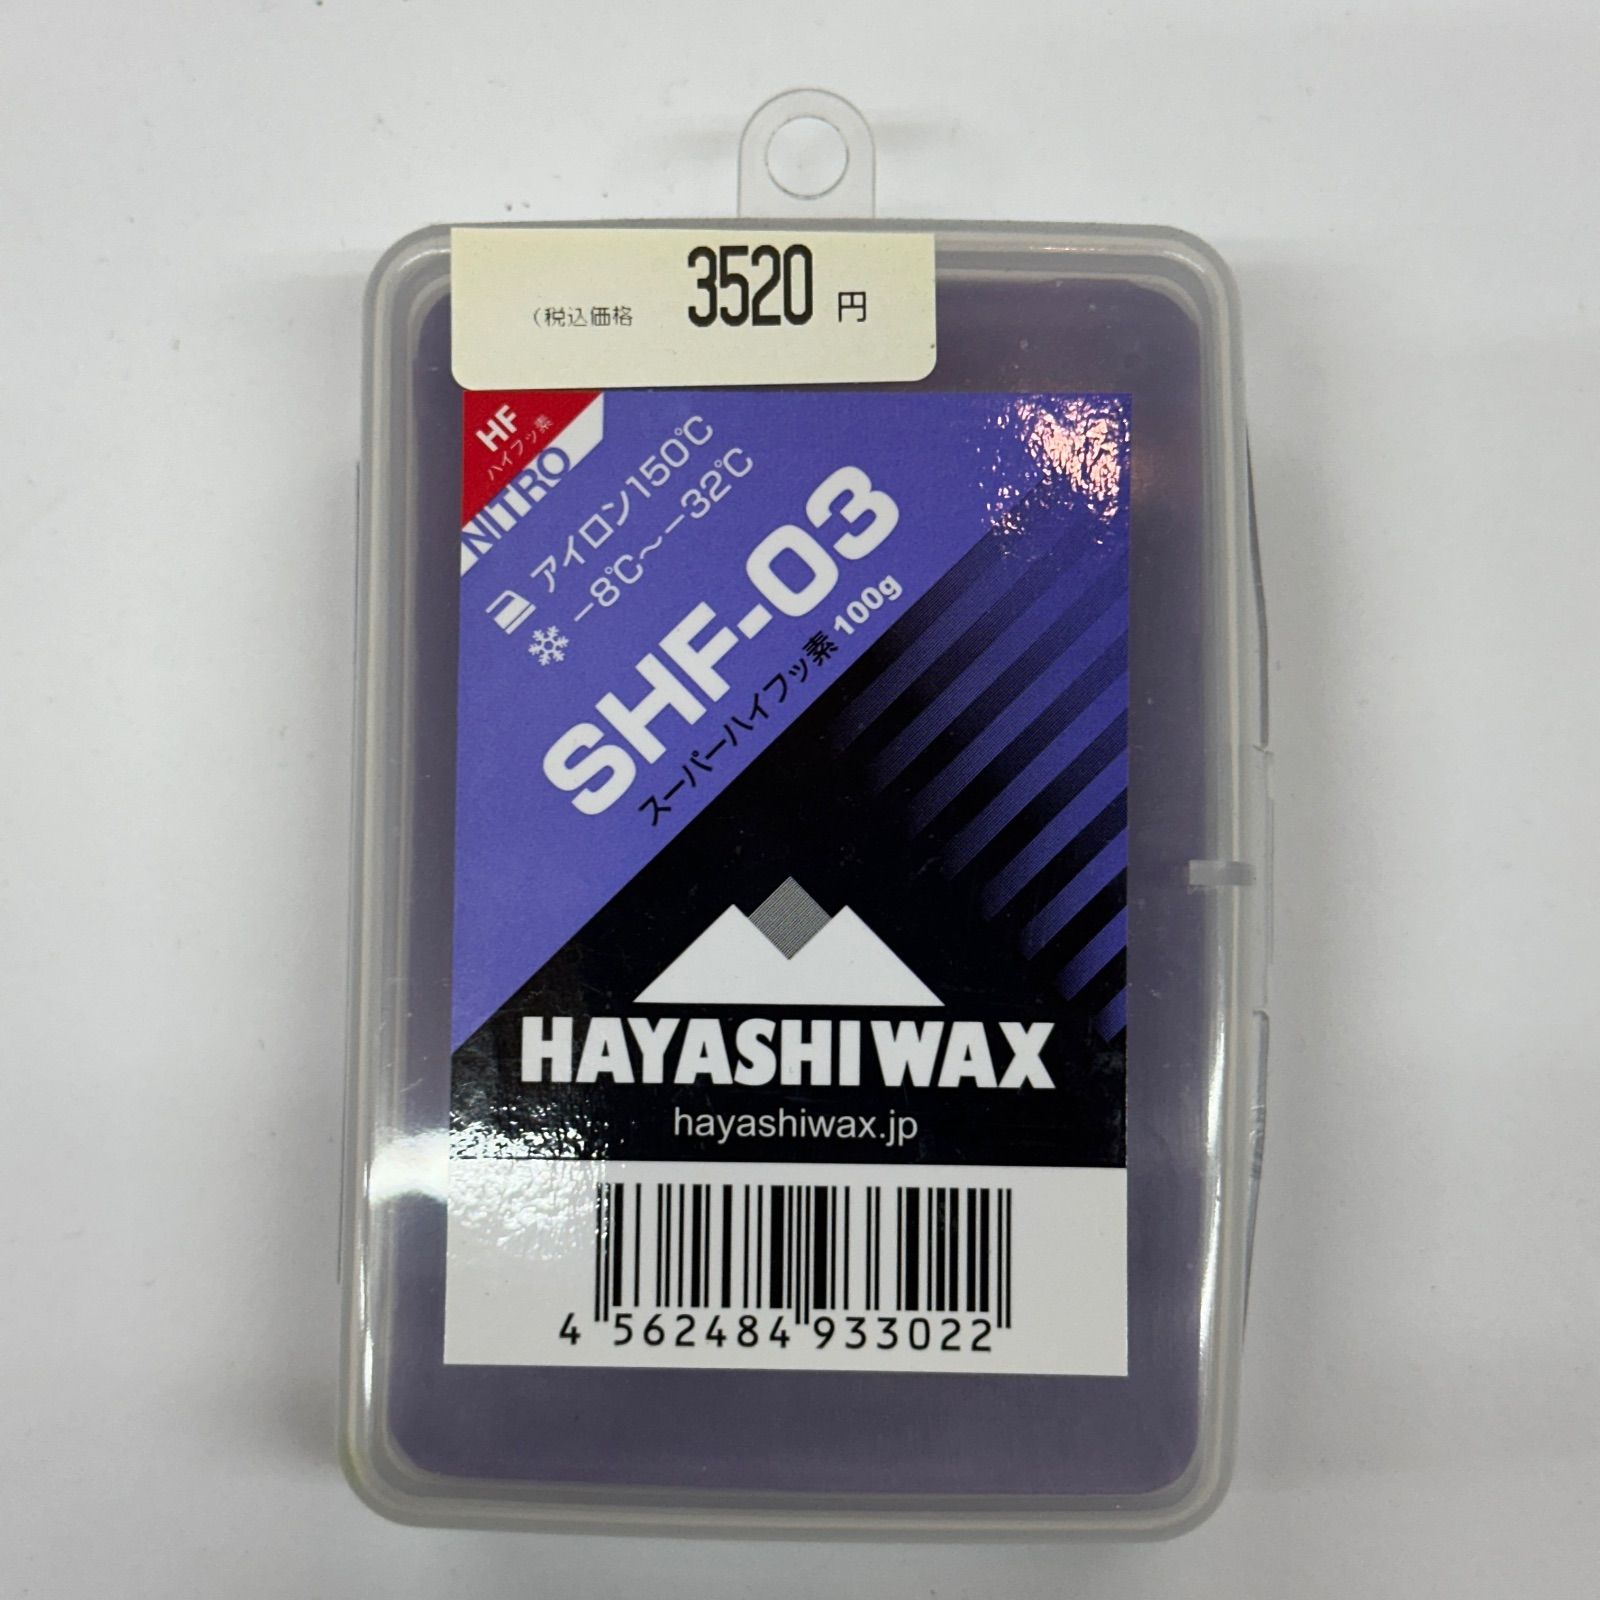 ハヤシワックス Blends Top Wax - スキー